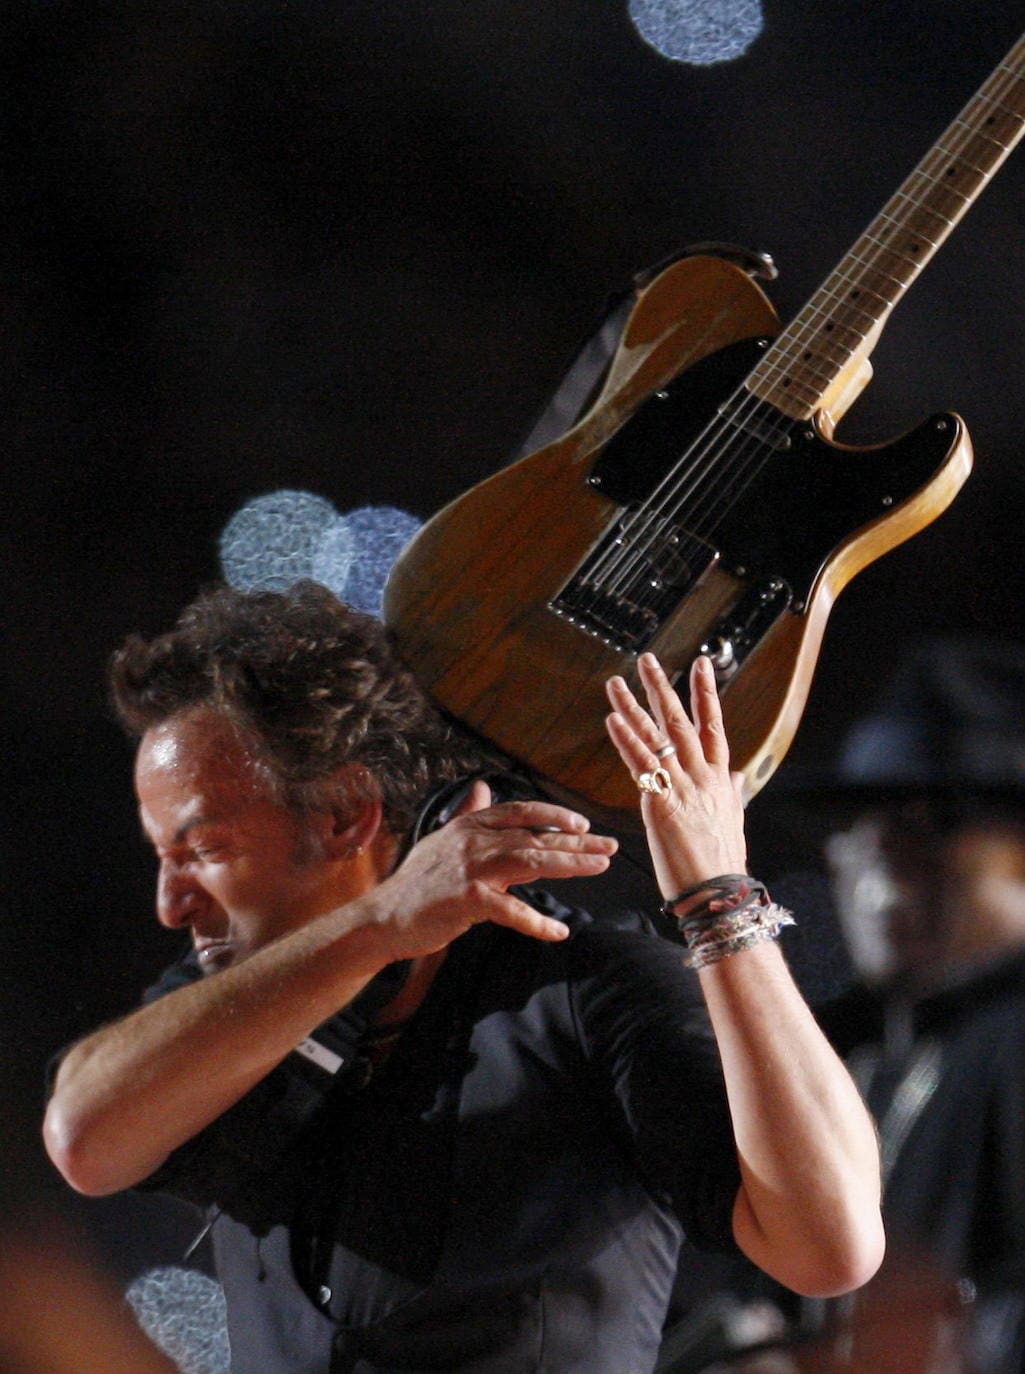 Bruce Springsteen entra en la tercera edad con la vitalidad de un joven rockero. Sus canciones y conciertos han colocado al artista américano en la cima mundial de la música. 